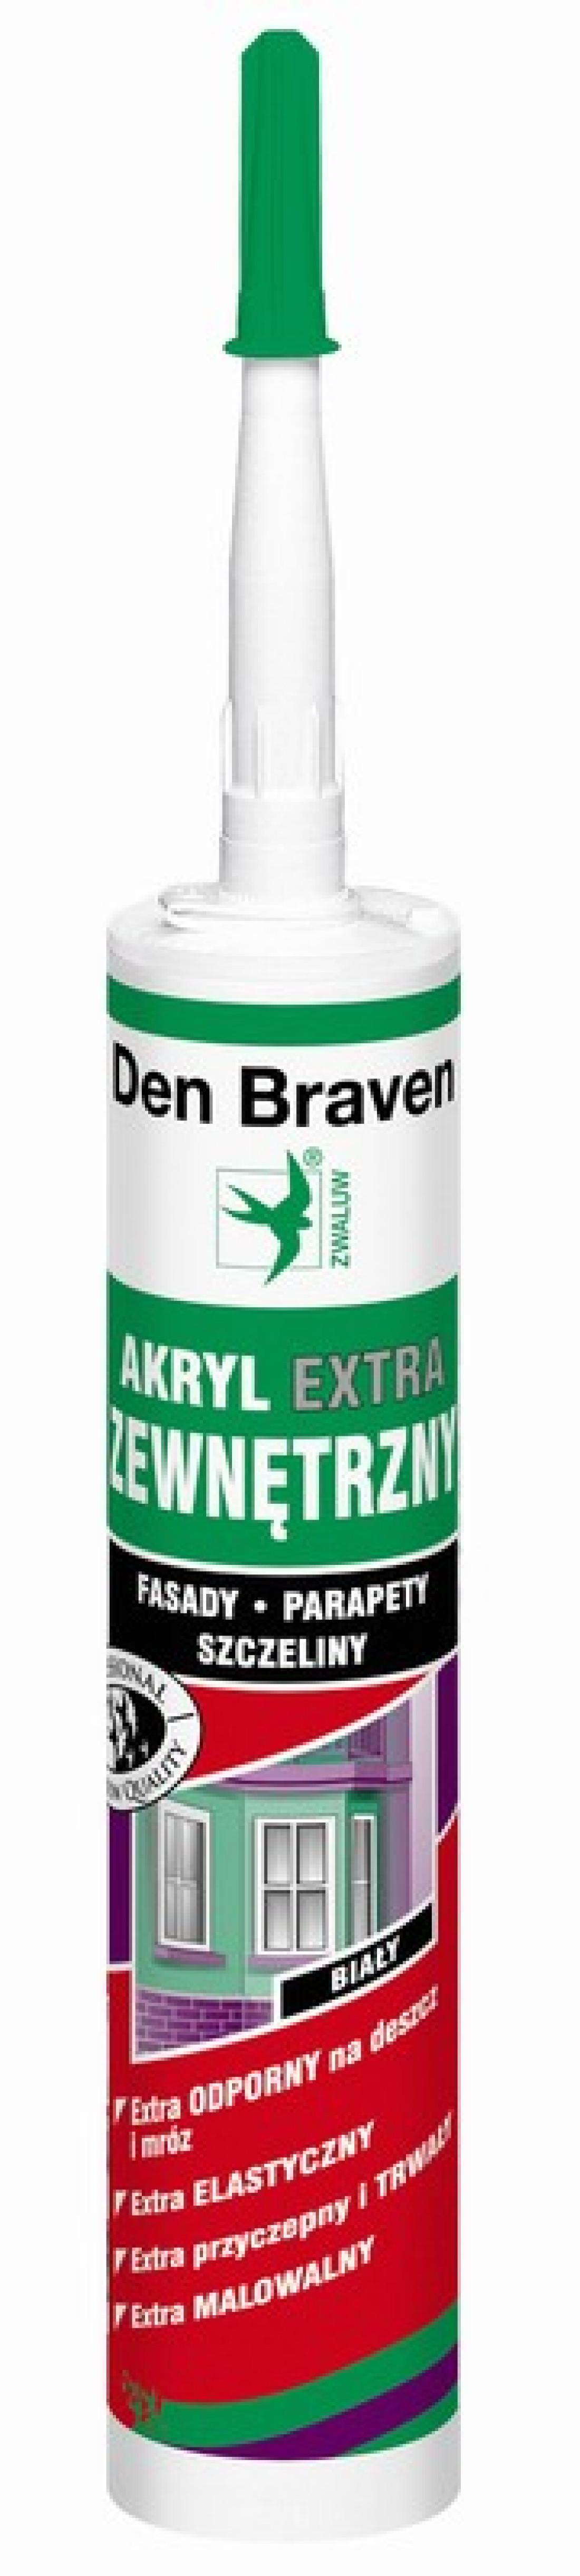 Uszczelniacz Acryl-Extra firmy Den Braven